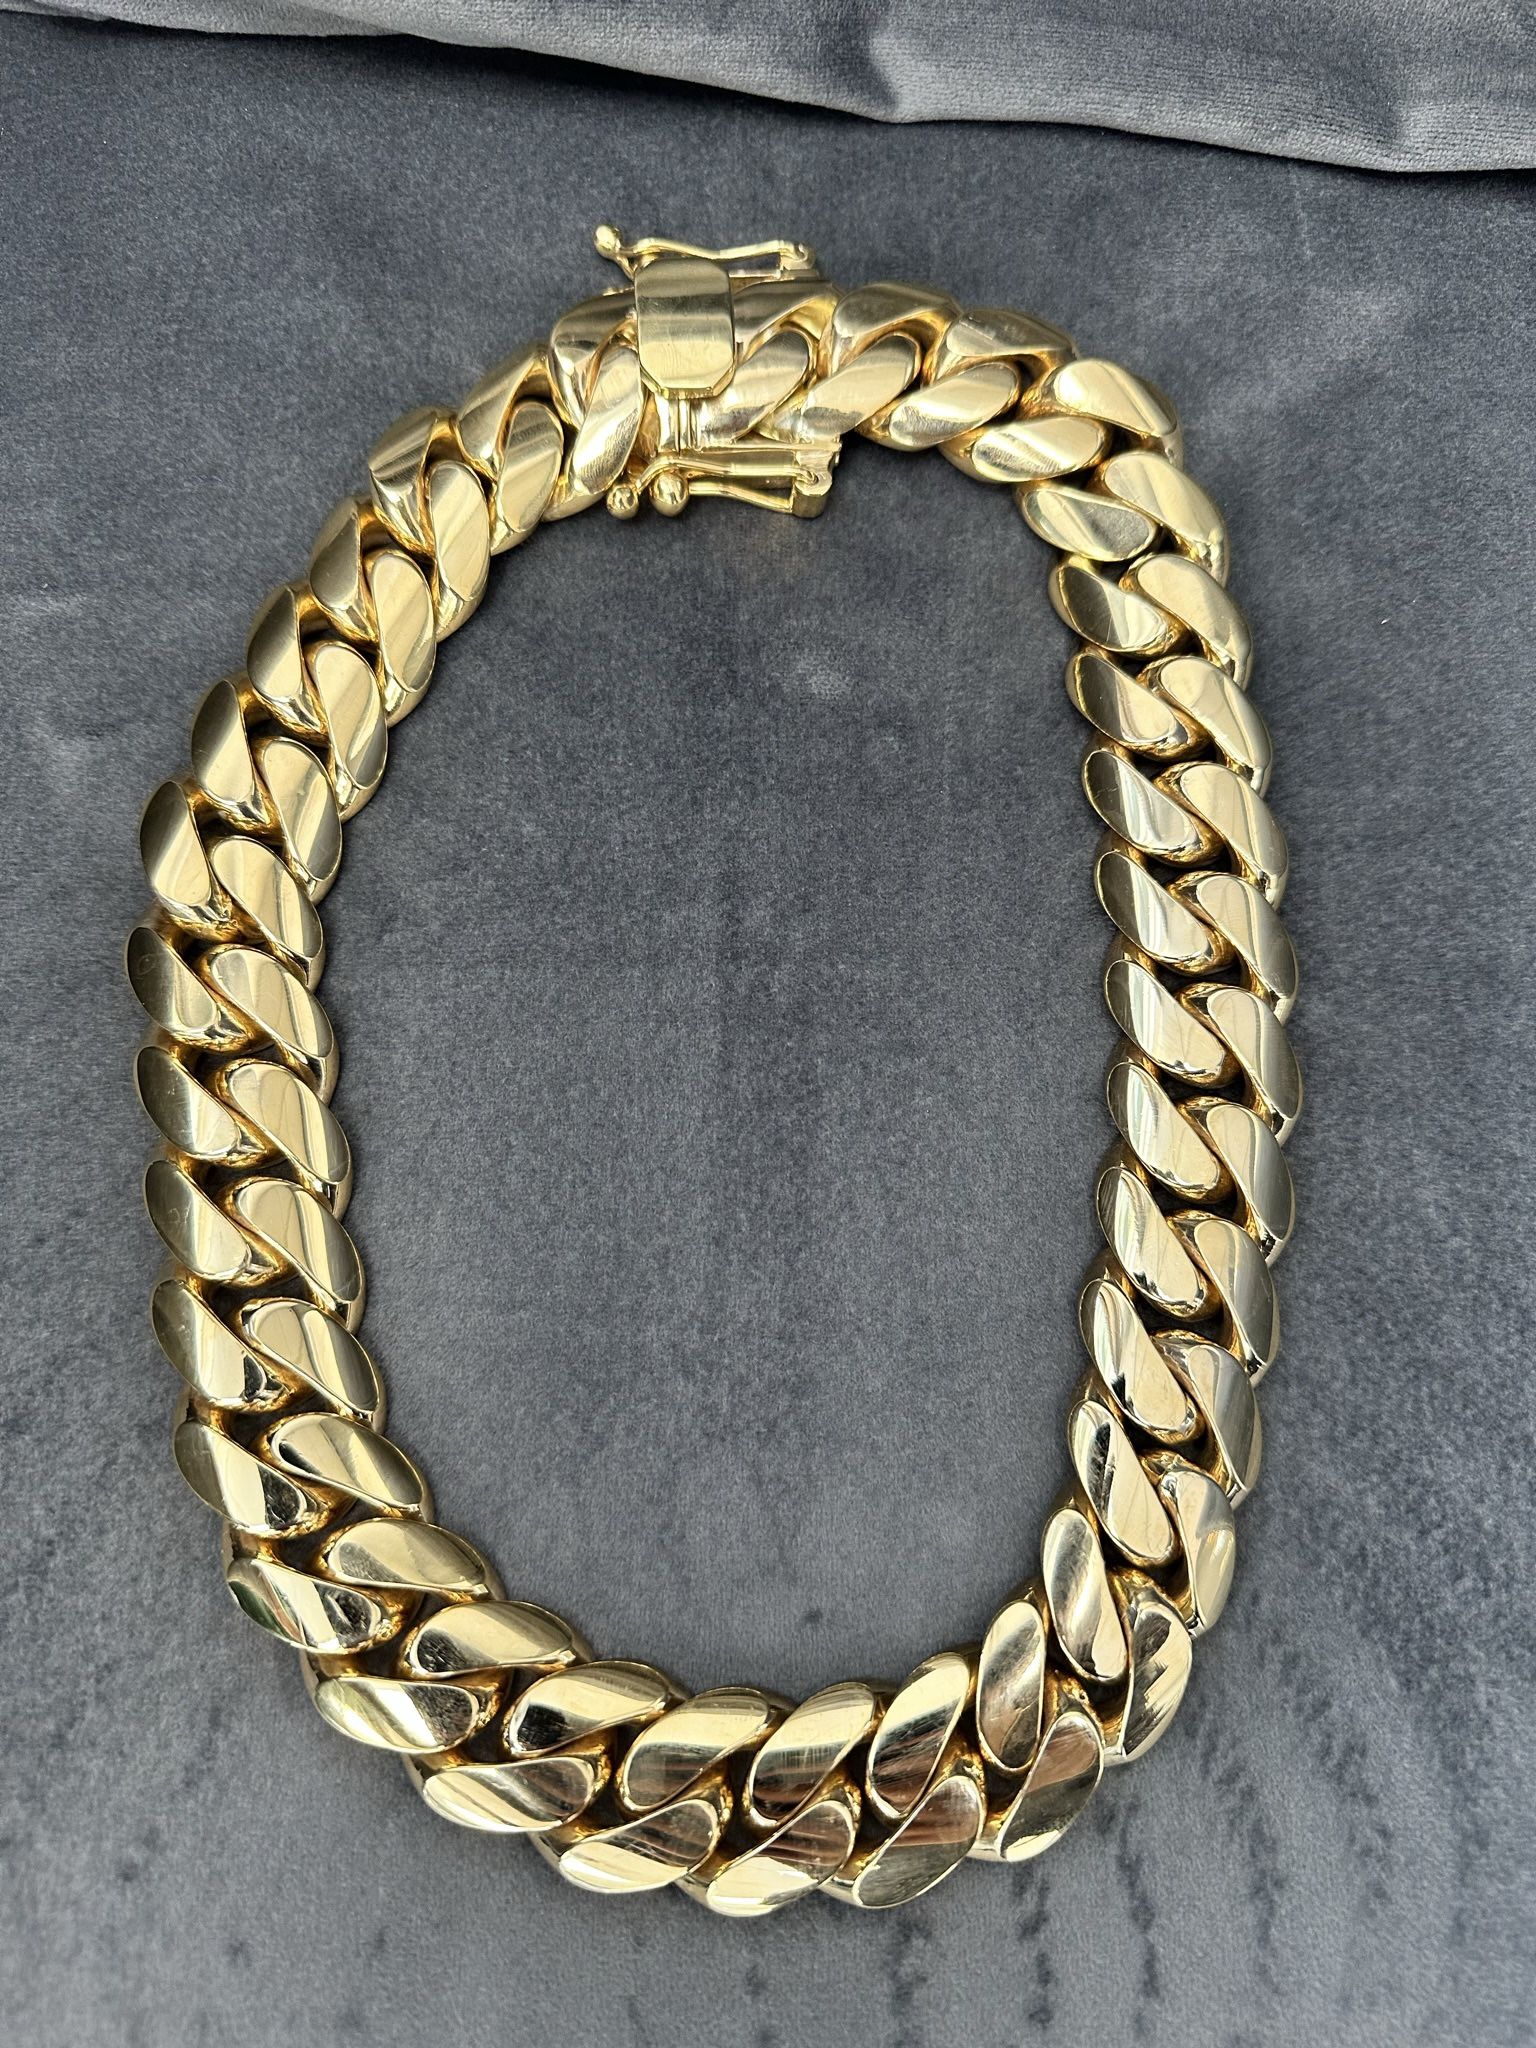 10k Solid Gold Kilo Chain 